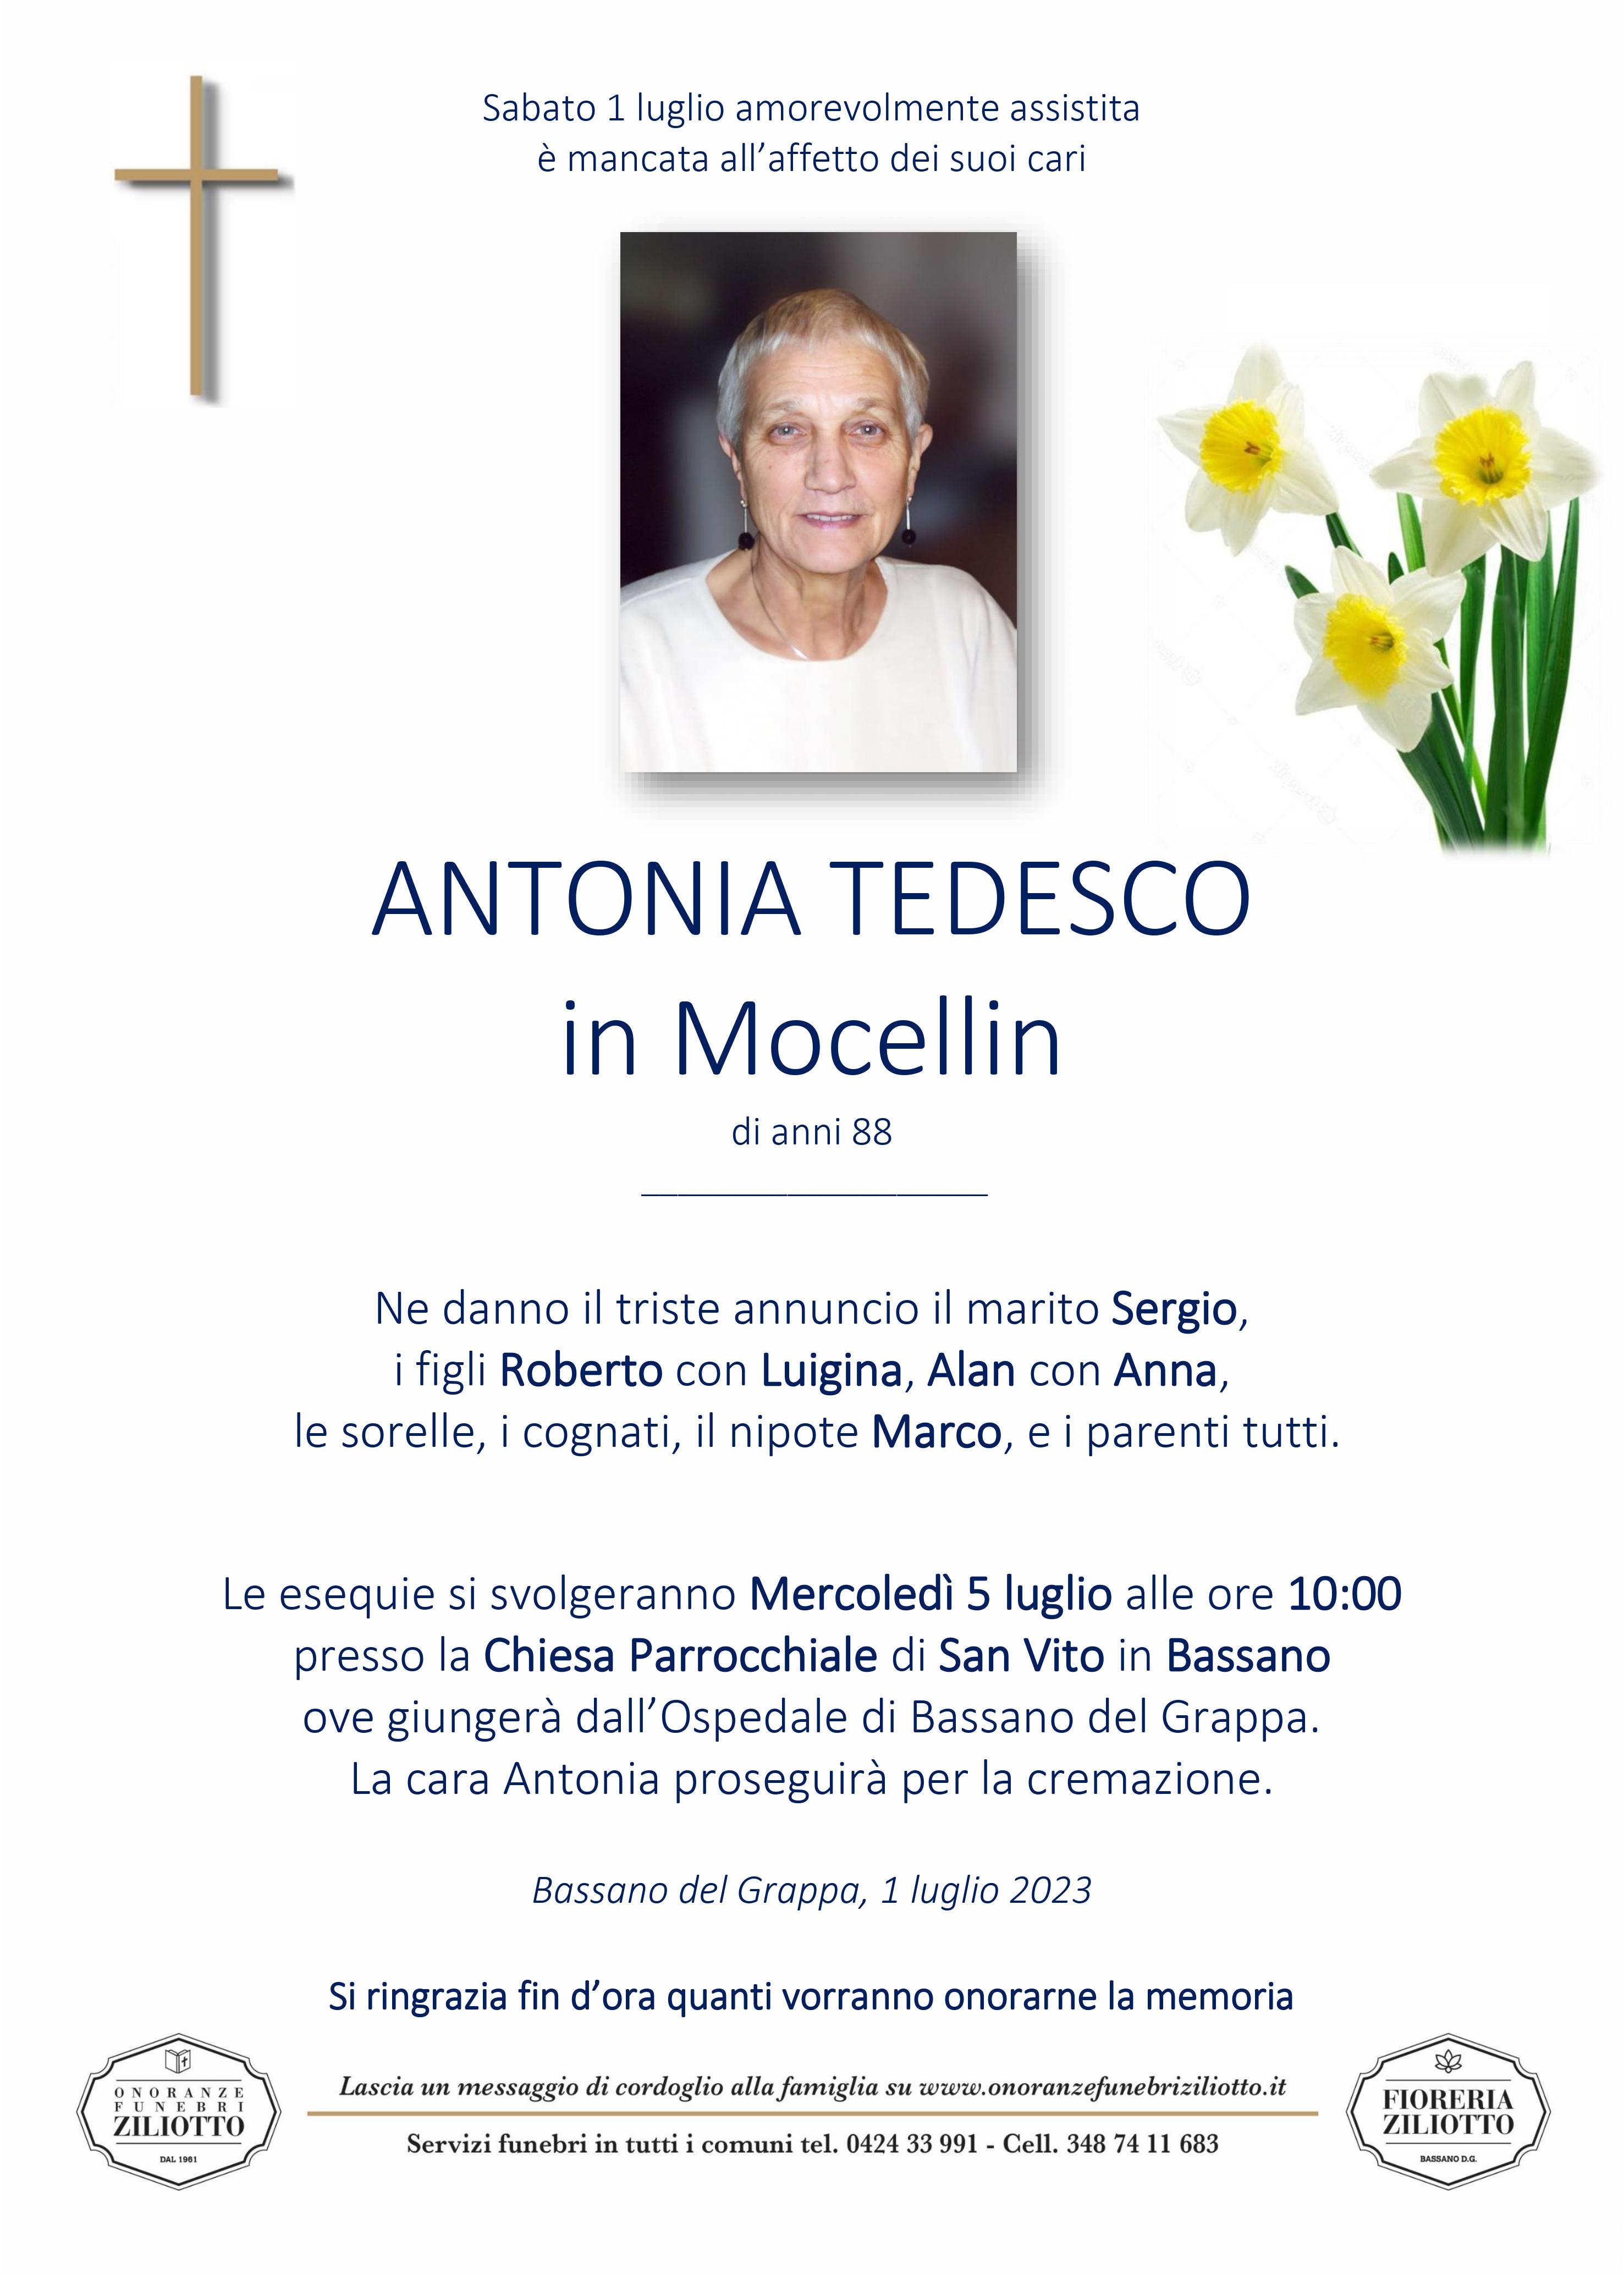 Antonia Tedesco - 88 anni - Bassano del Grappa